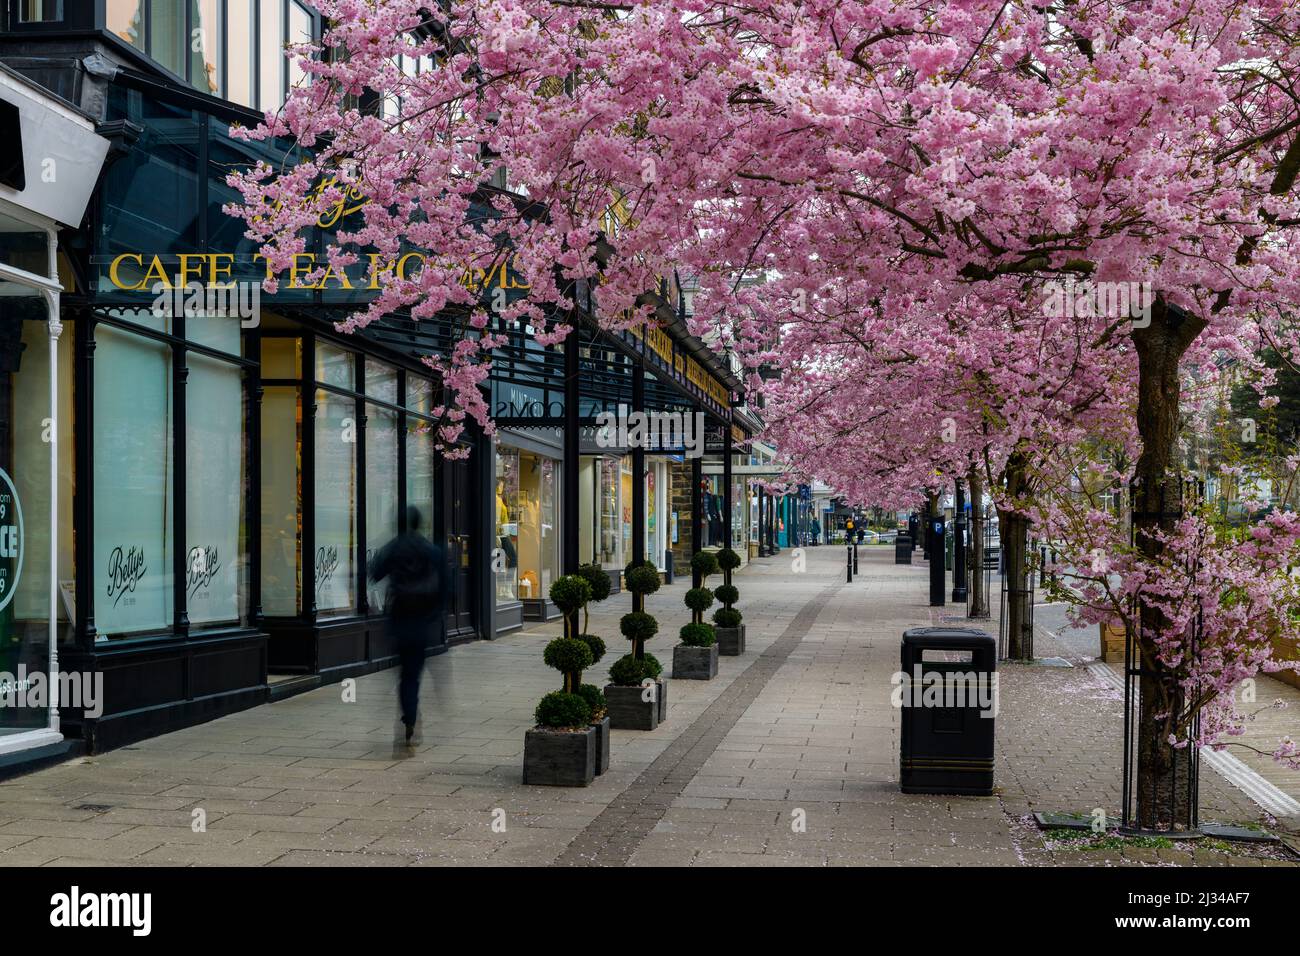 Centre-ville pittoresque de printemps (magnifiques cerisiers colorés en fleurs, restaurant élégant et boutique de cafés) - The Grove, Ilkley, Yorkshire, Angleterre, Royaume-Uni. Banque D'Images